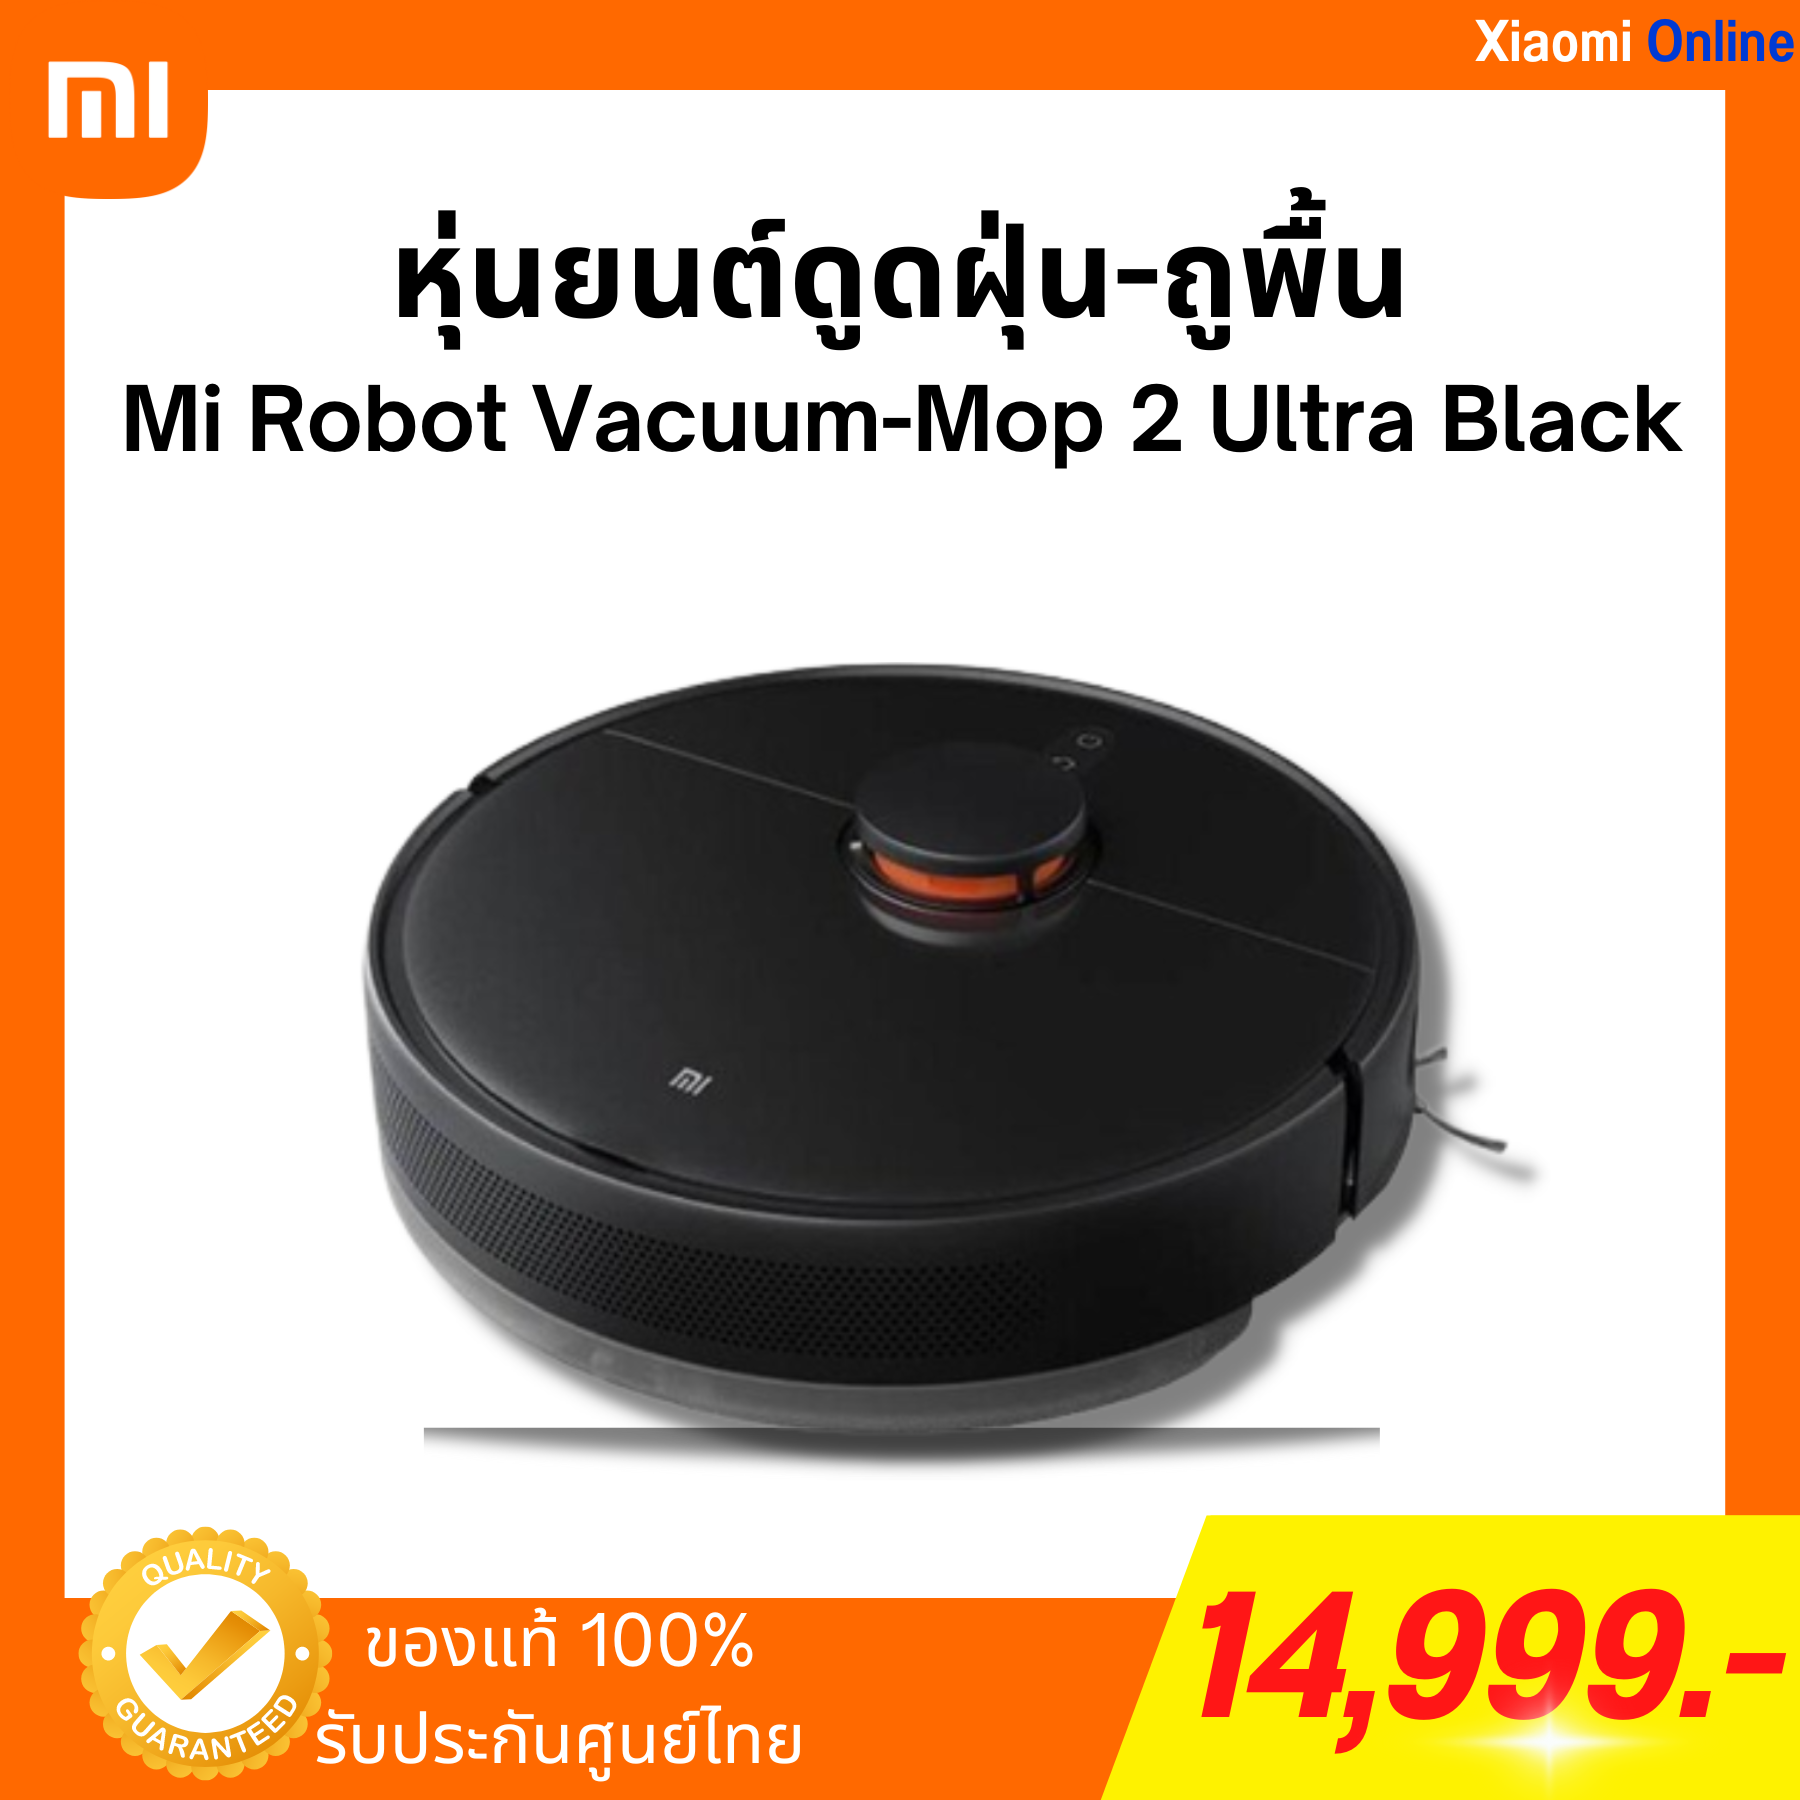 หุ่นยนต์ดูดฝุ่น-ถูพื้น Mi Robot Vacuum-Mop 2 Ultra Black